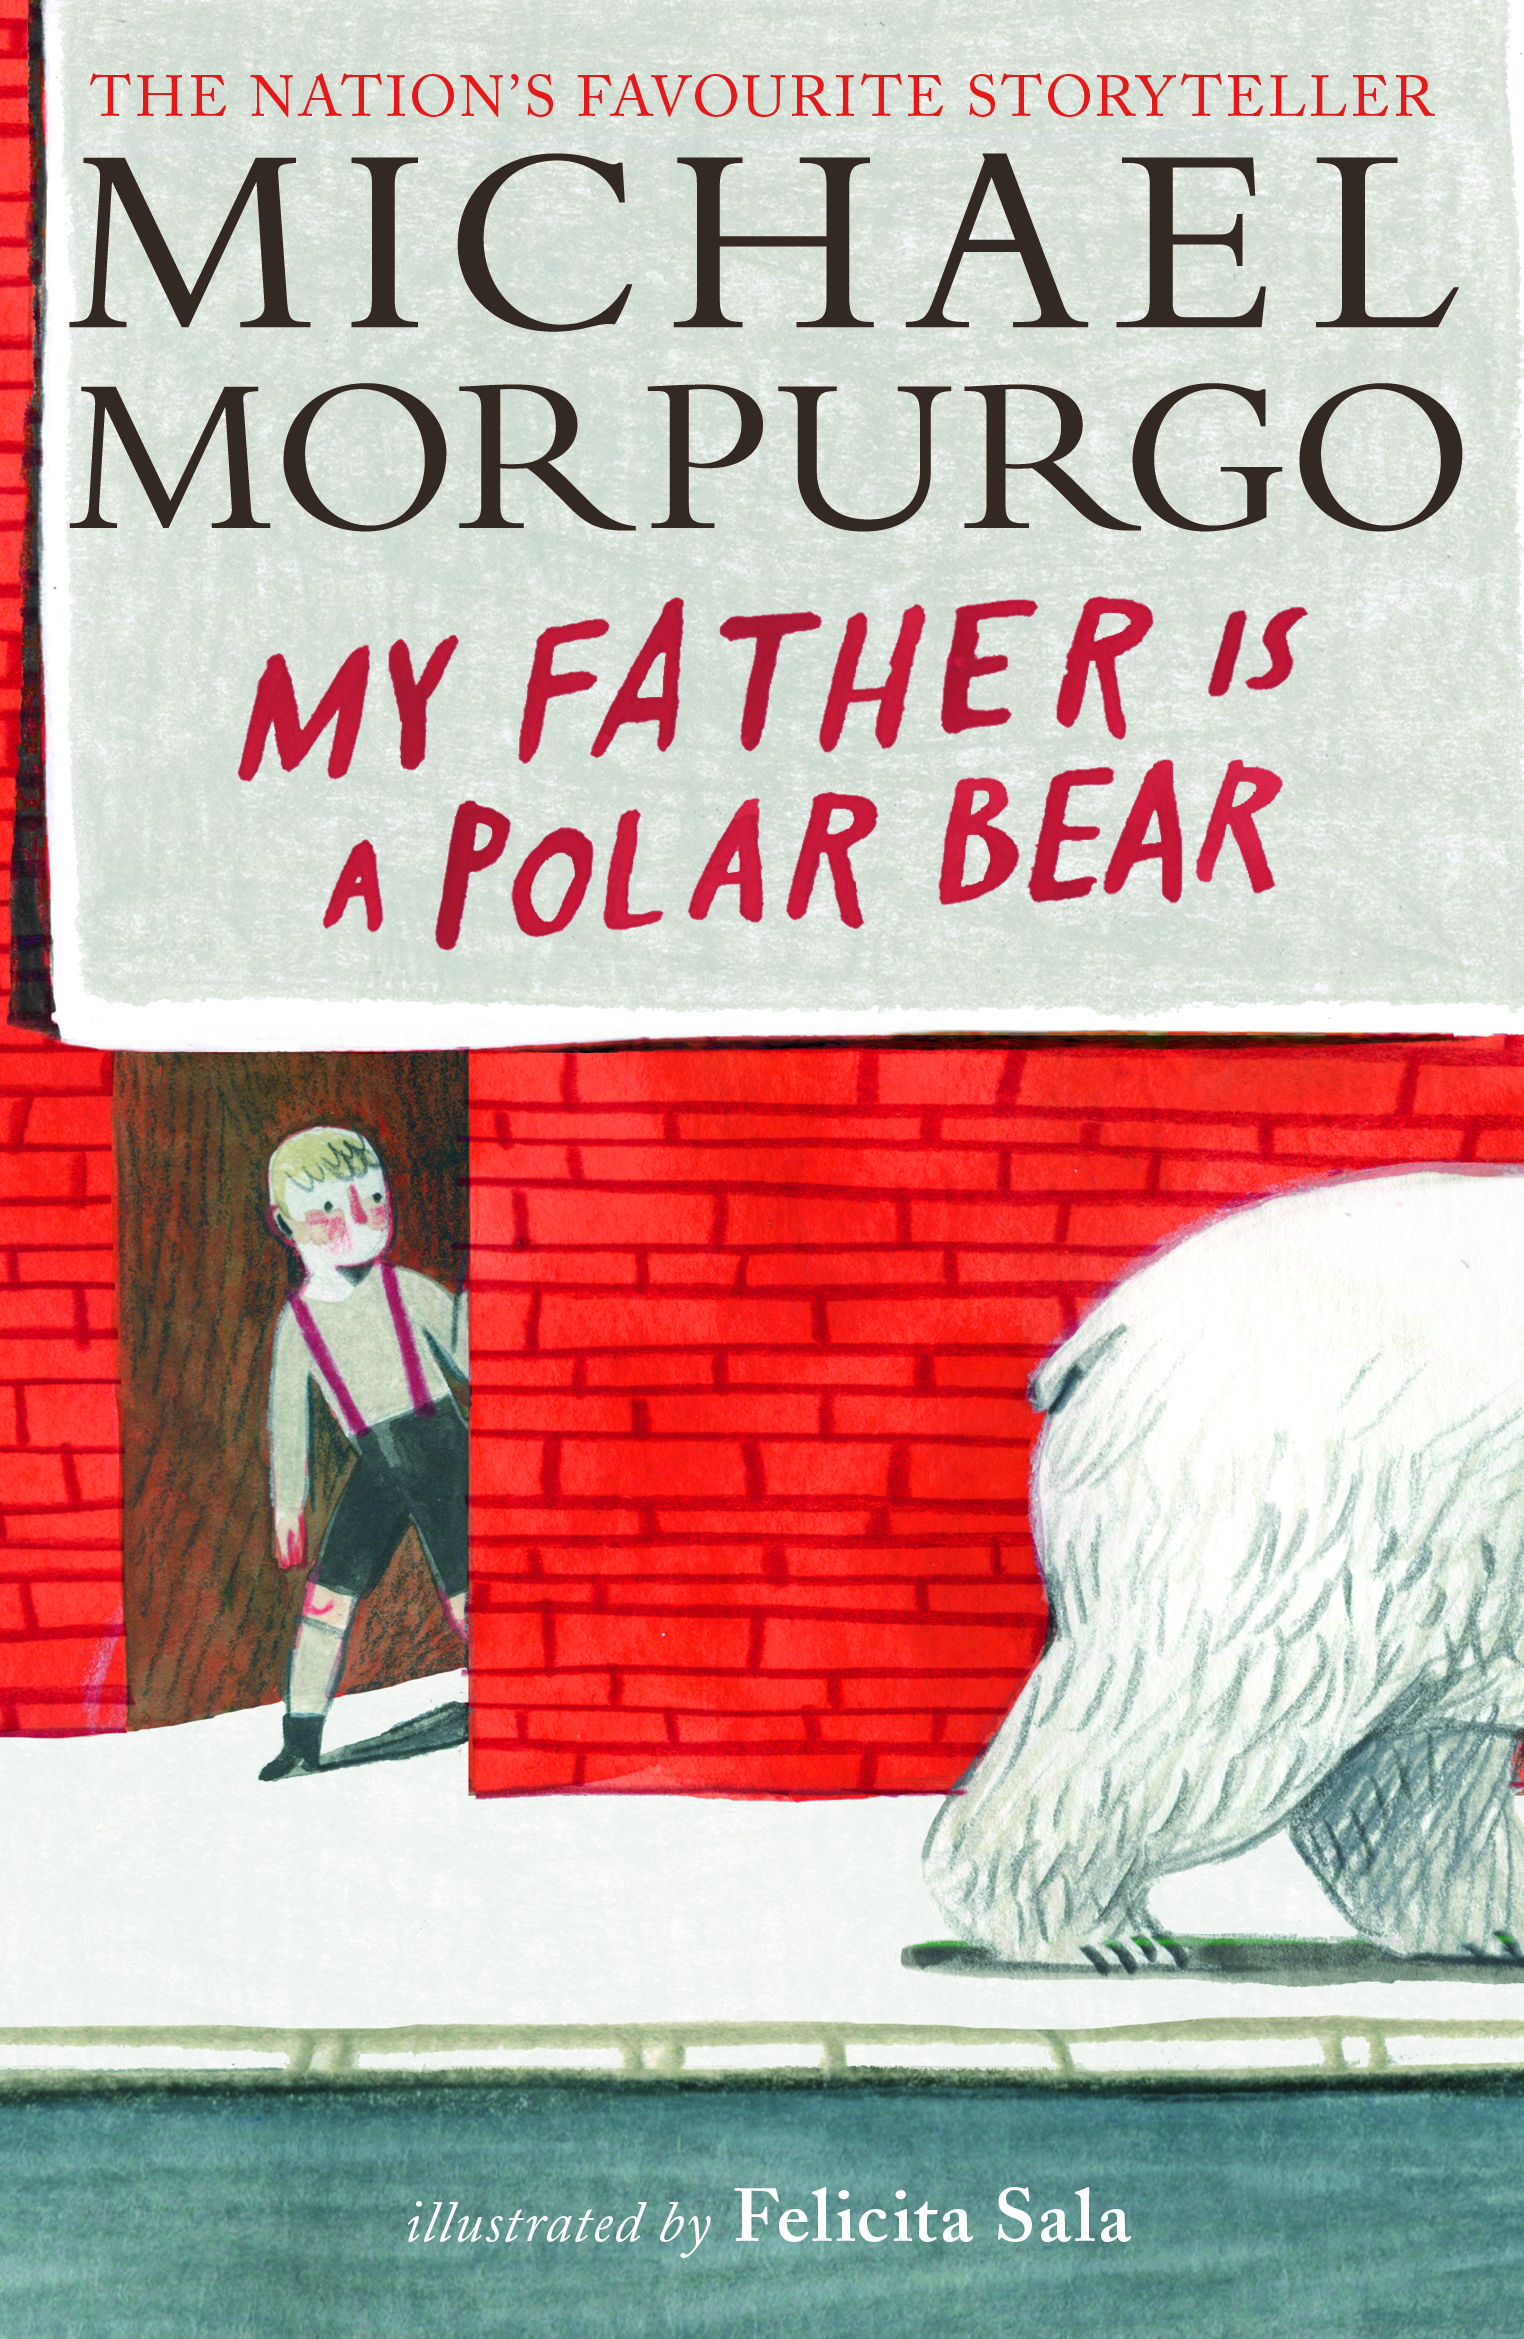 My-Father-Is-a-Polar-Bear